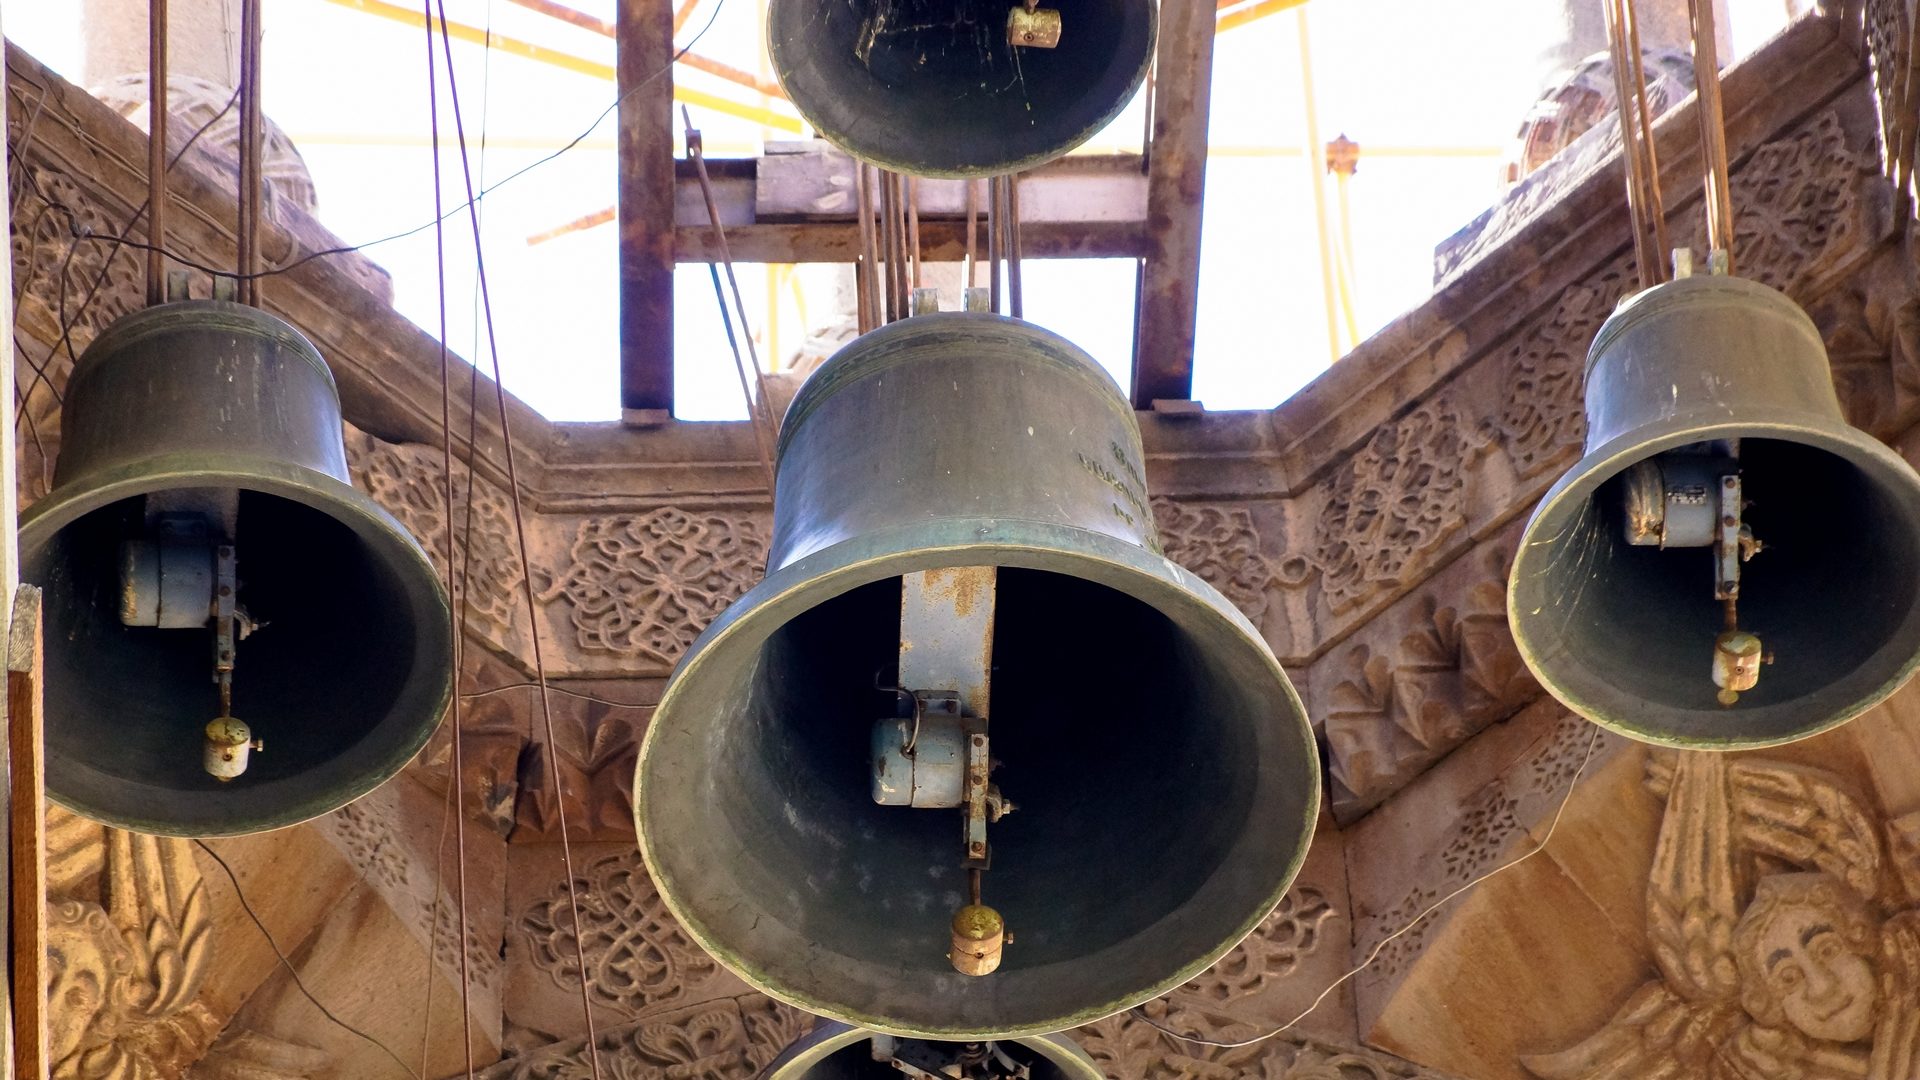 Les cloches sonnent l'appel à la prière (photo prétexte) | domaine public 